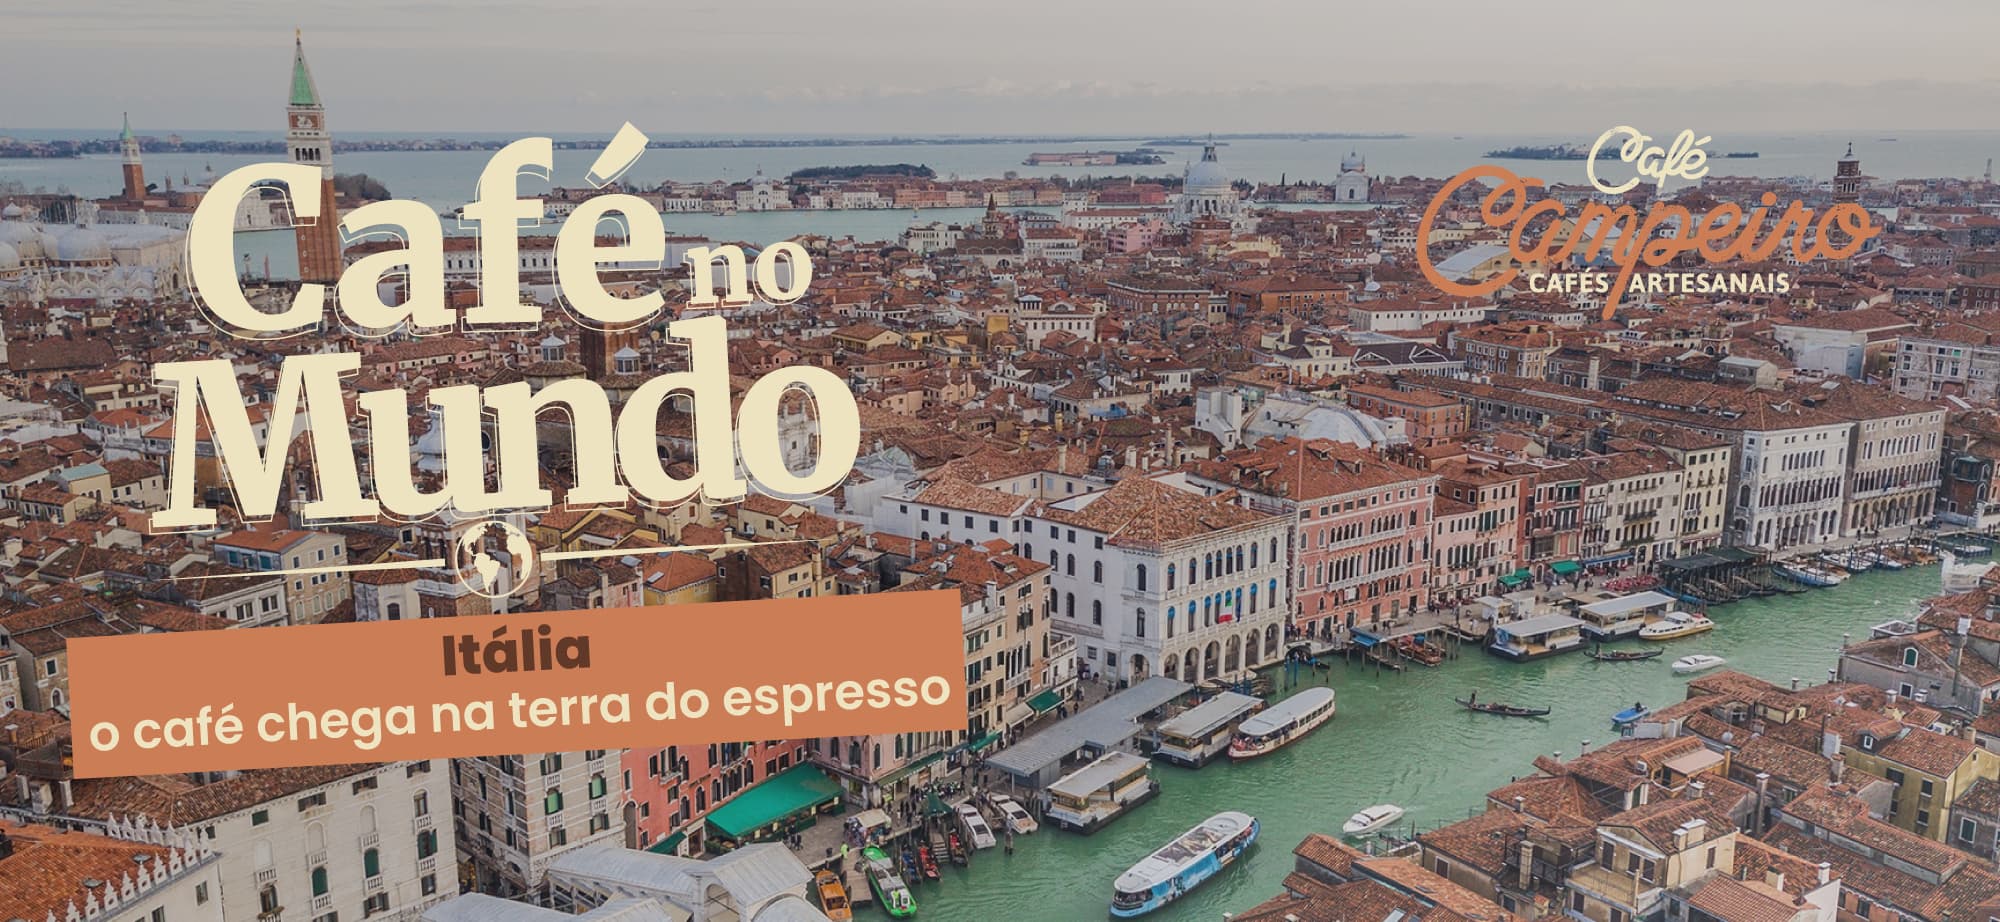 Itália - O Café Chega Na Terra do Espresso